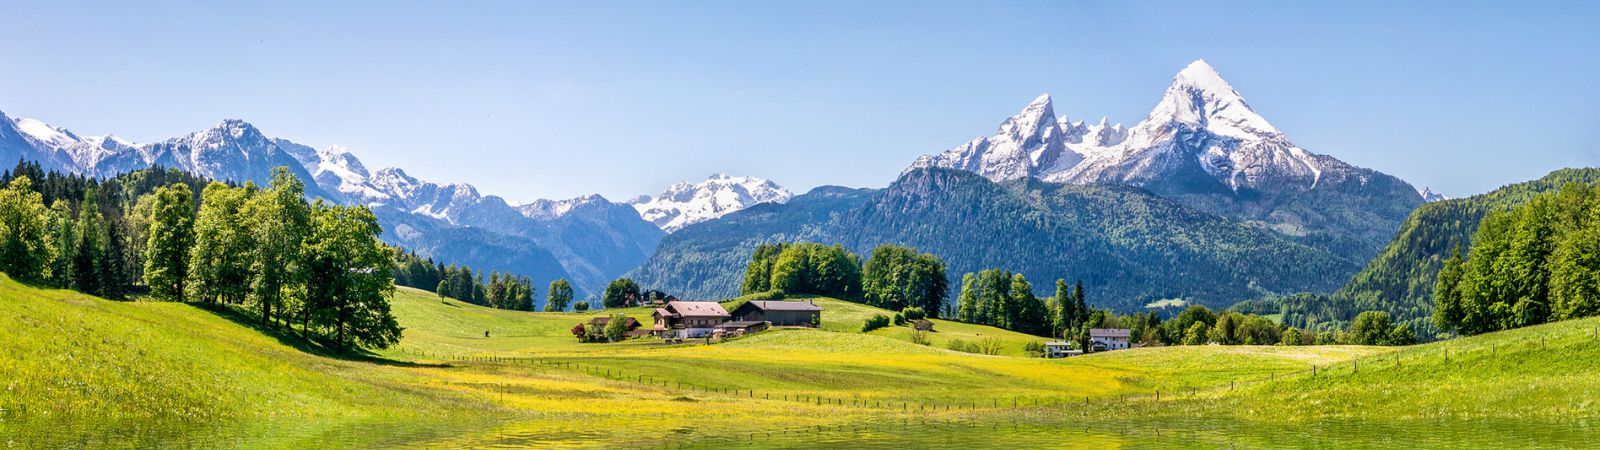 Oostenrijk bergen met een mooi meertje